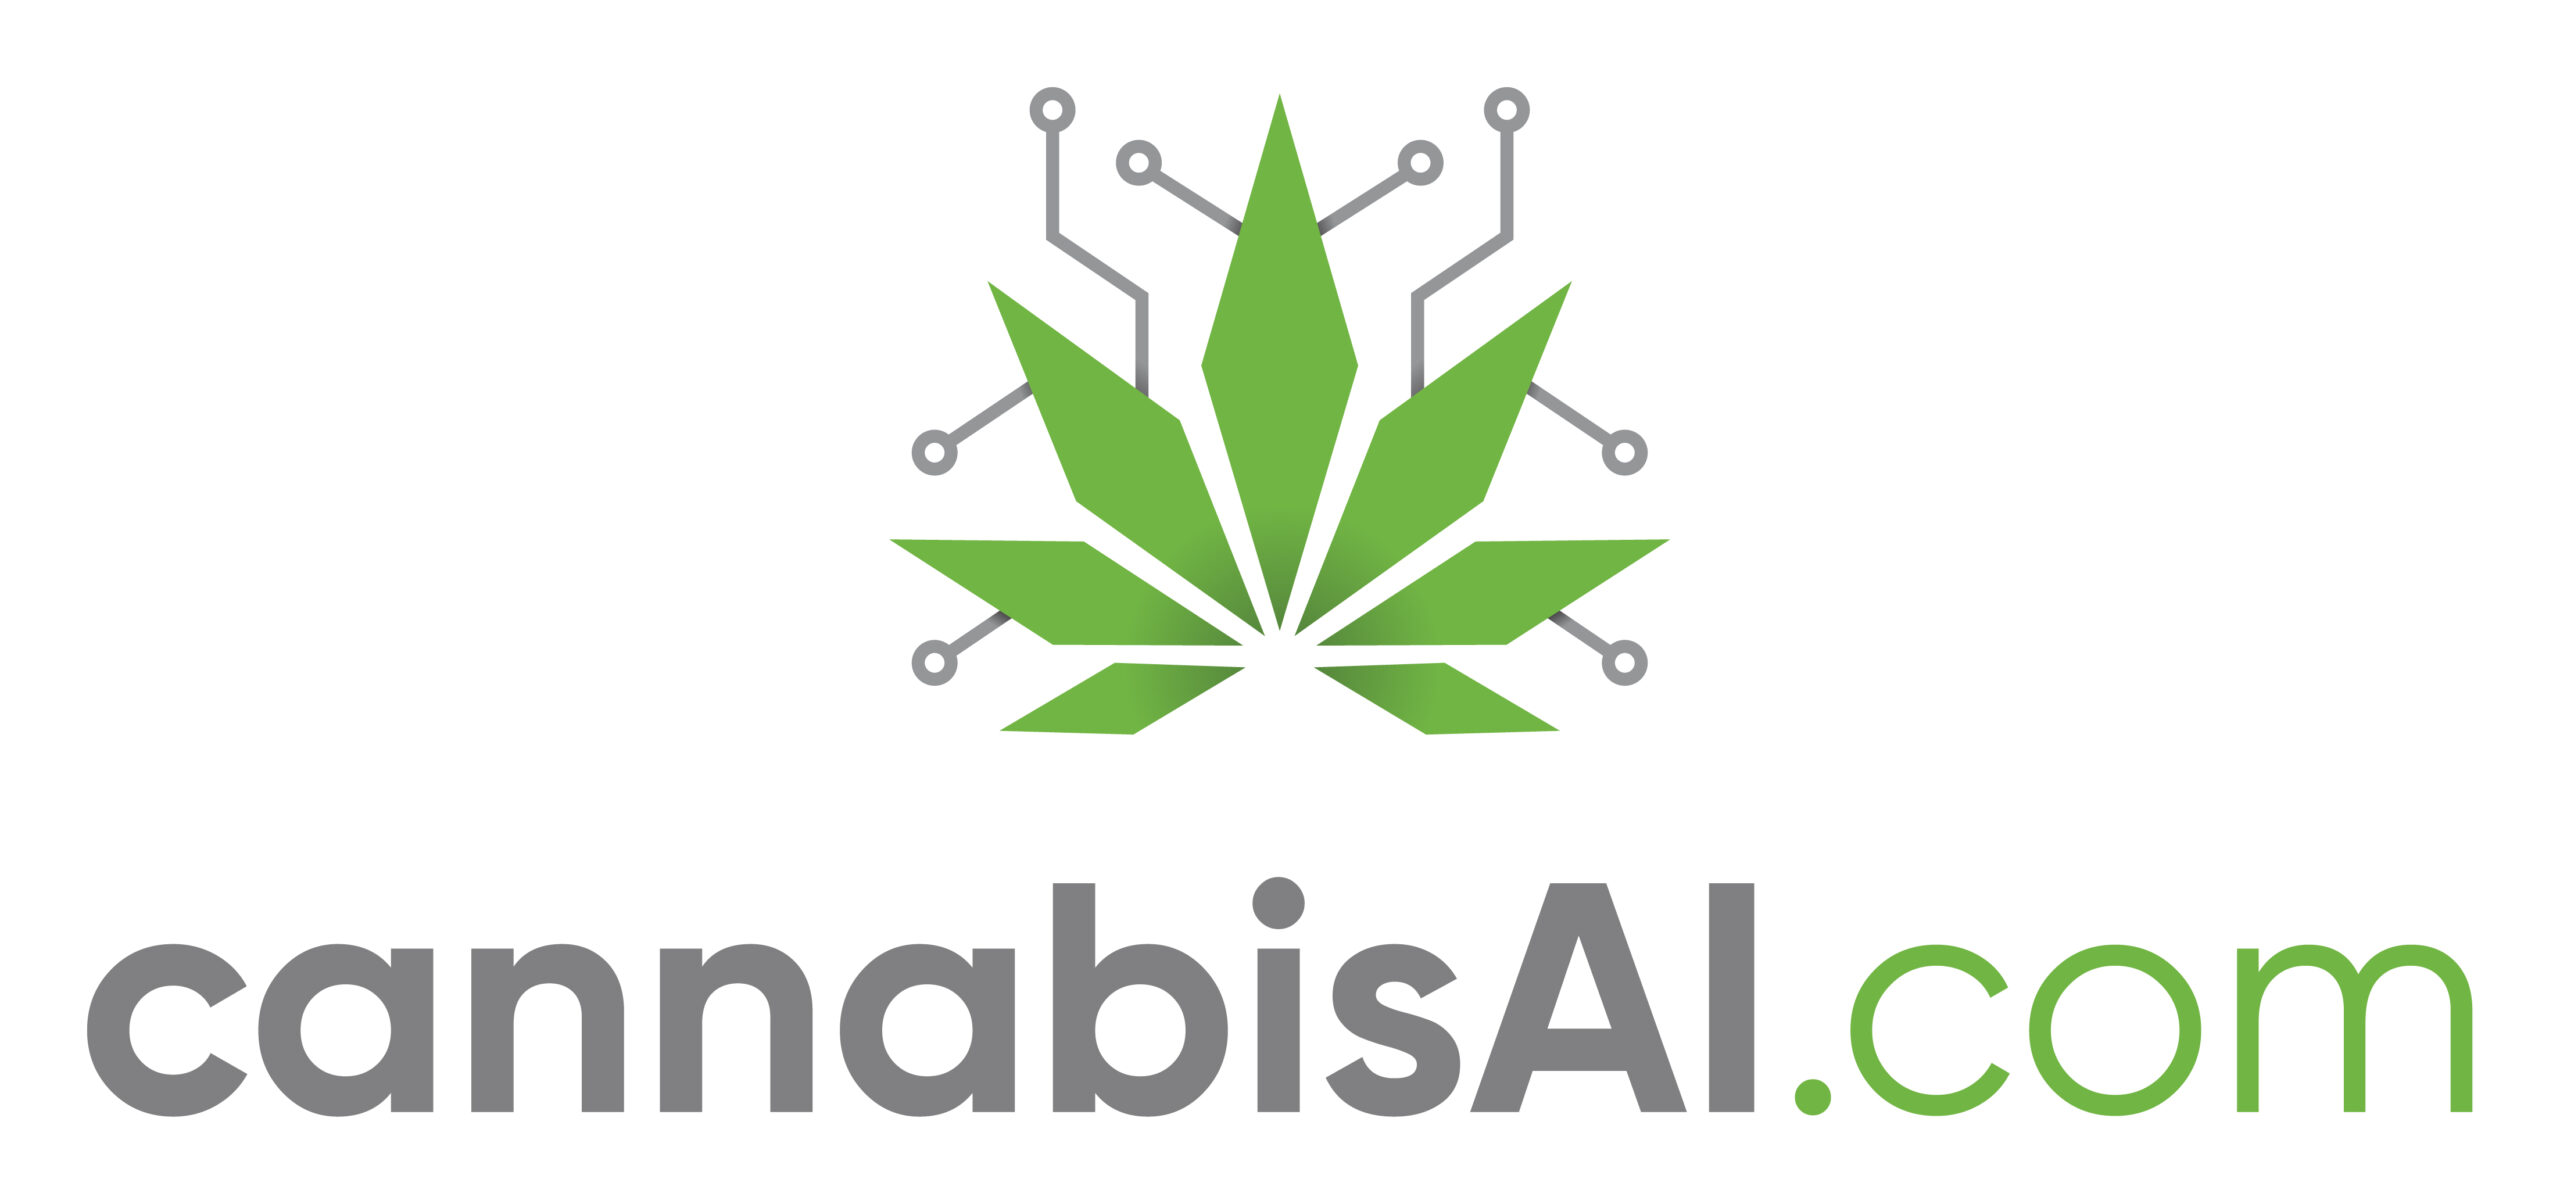 Cannabis A.I.